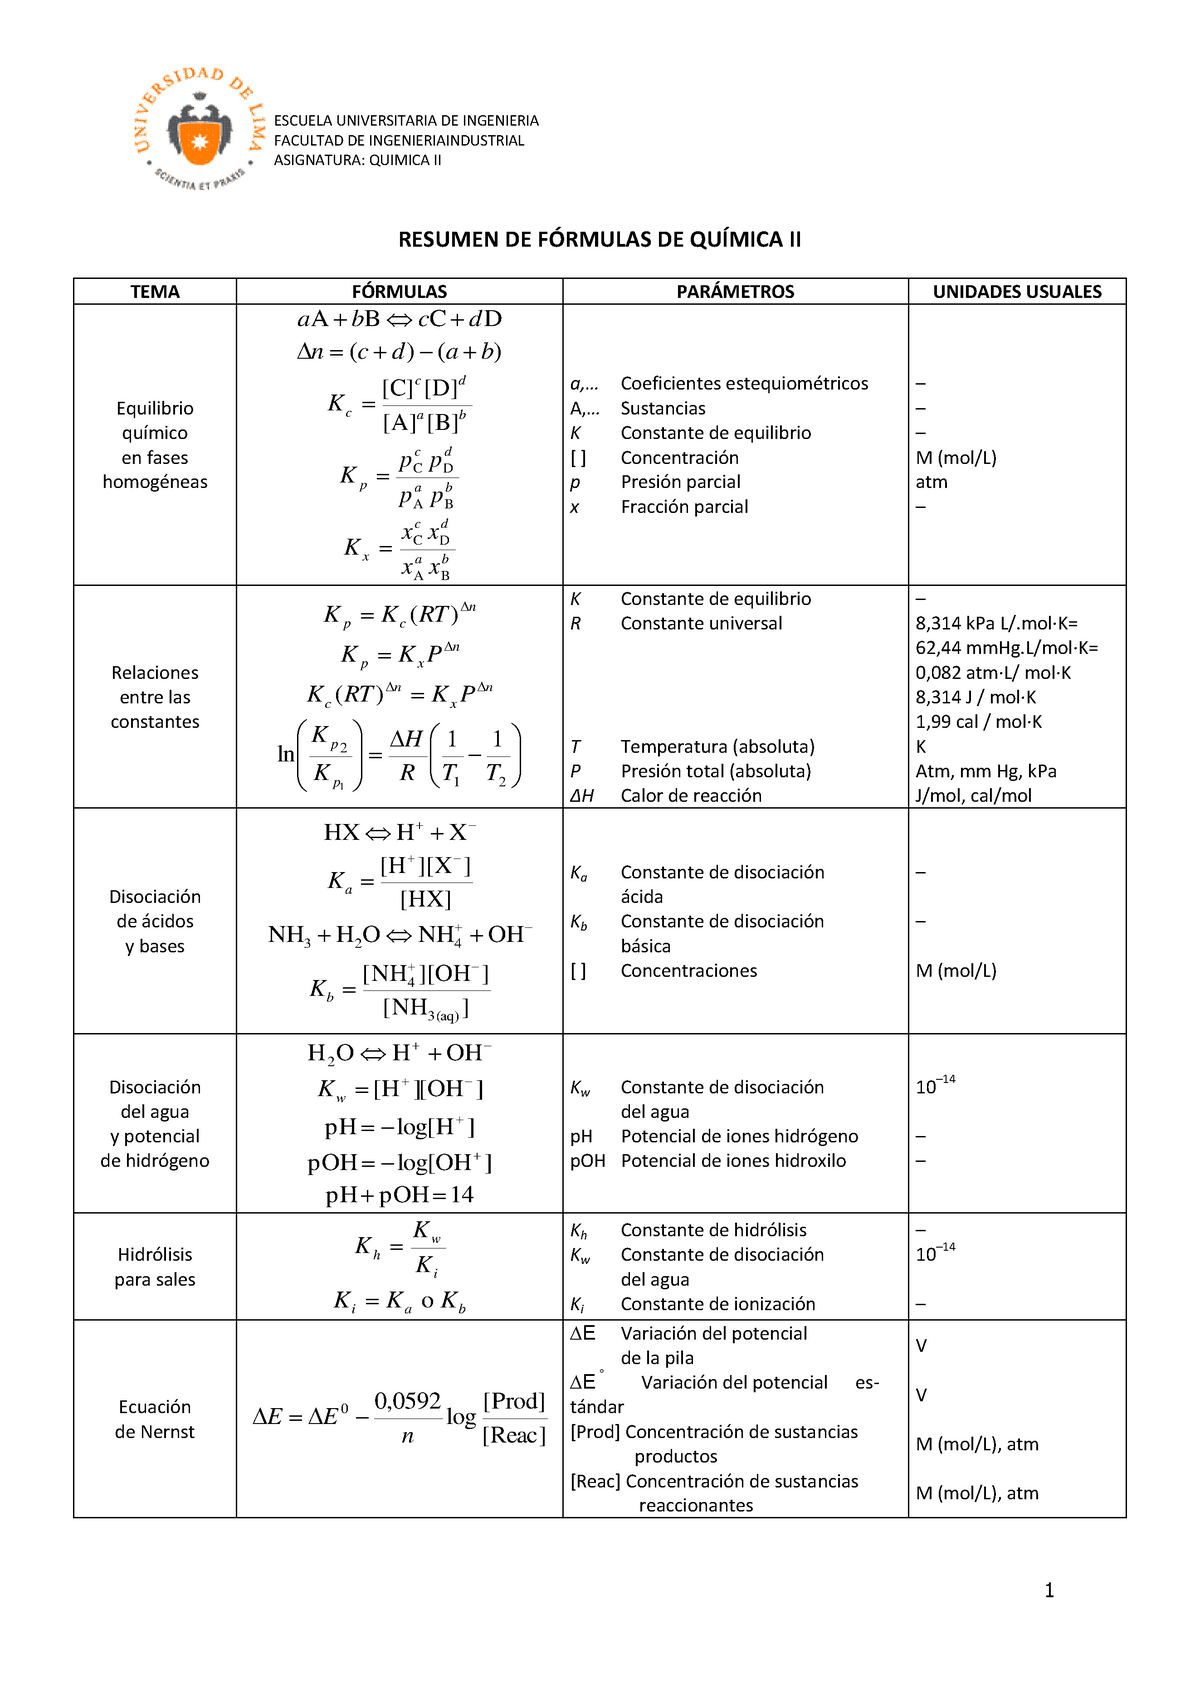 Resumen De Fórmulas Formulario De Química Ii Ingeniería Industrial Escuela Universitaria De 6550